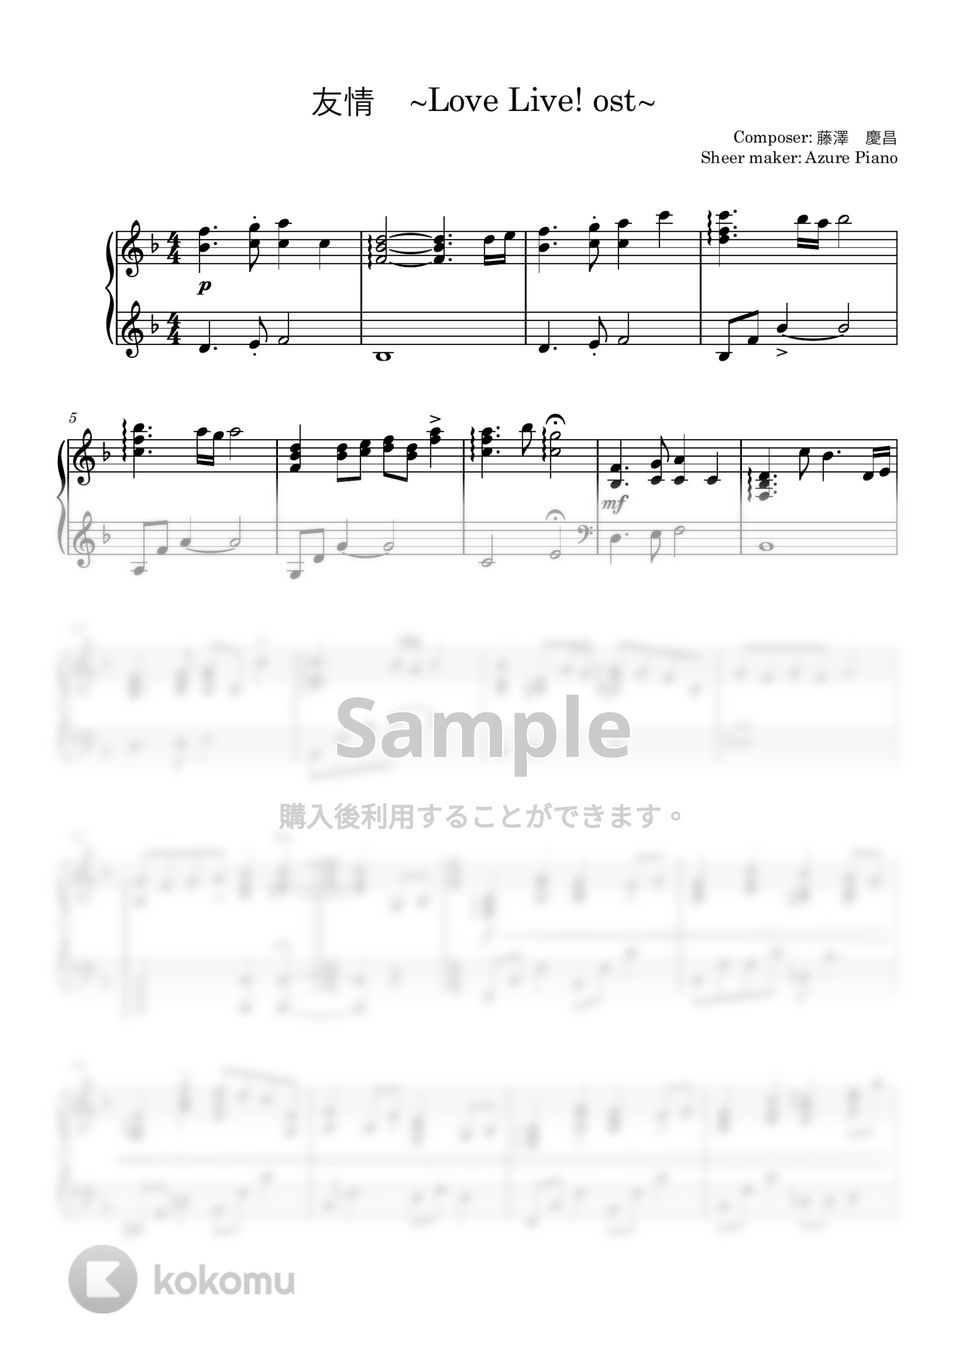 藤澤　慶昌 - 友情 by Azure Piano